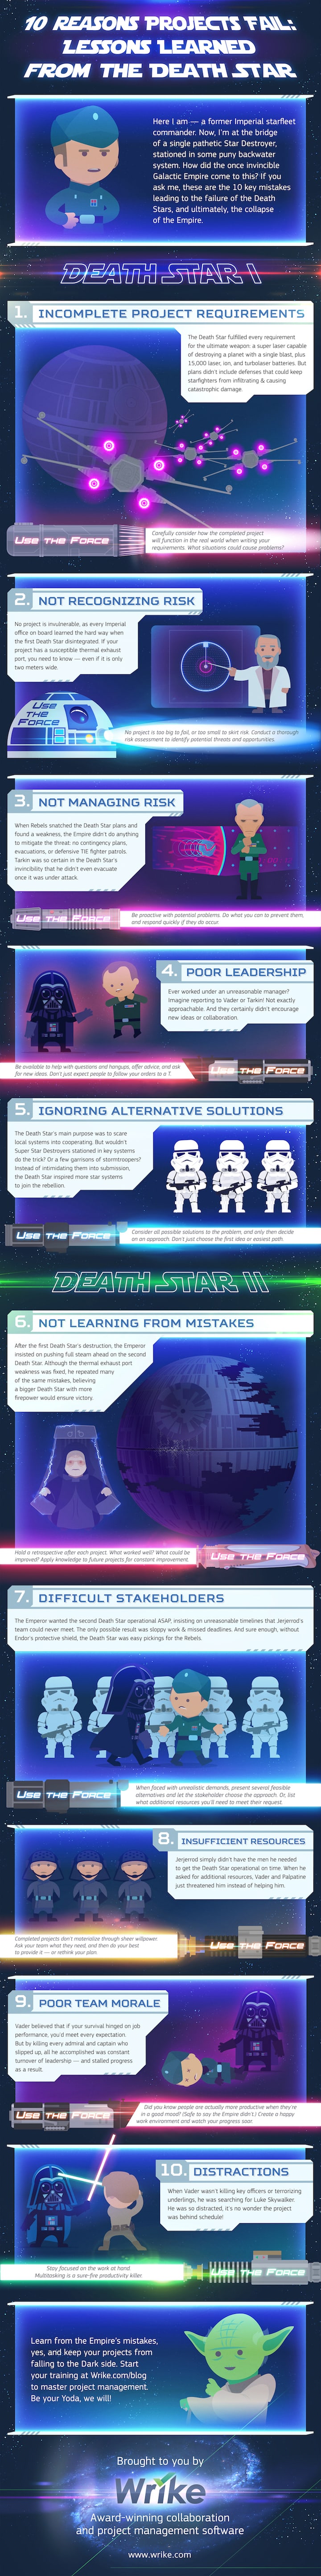 10 Reasons the Death Star Failed